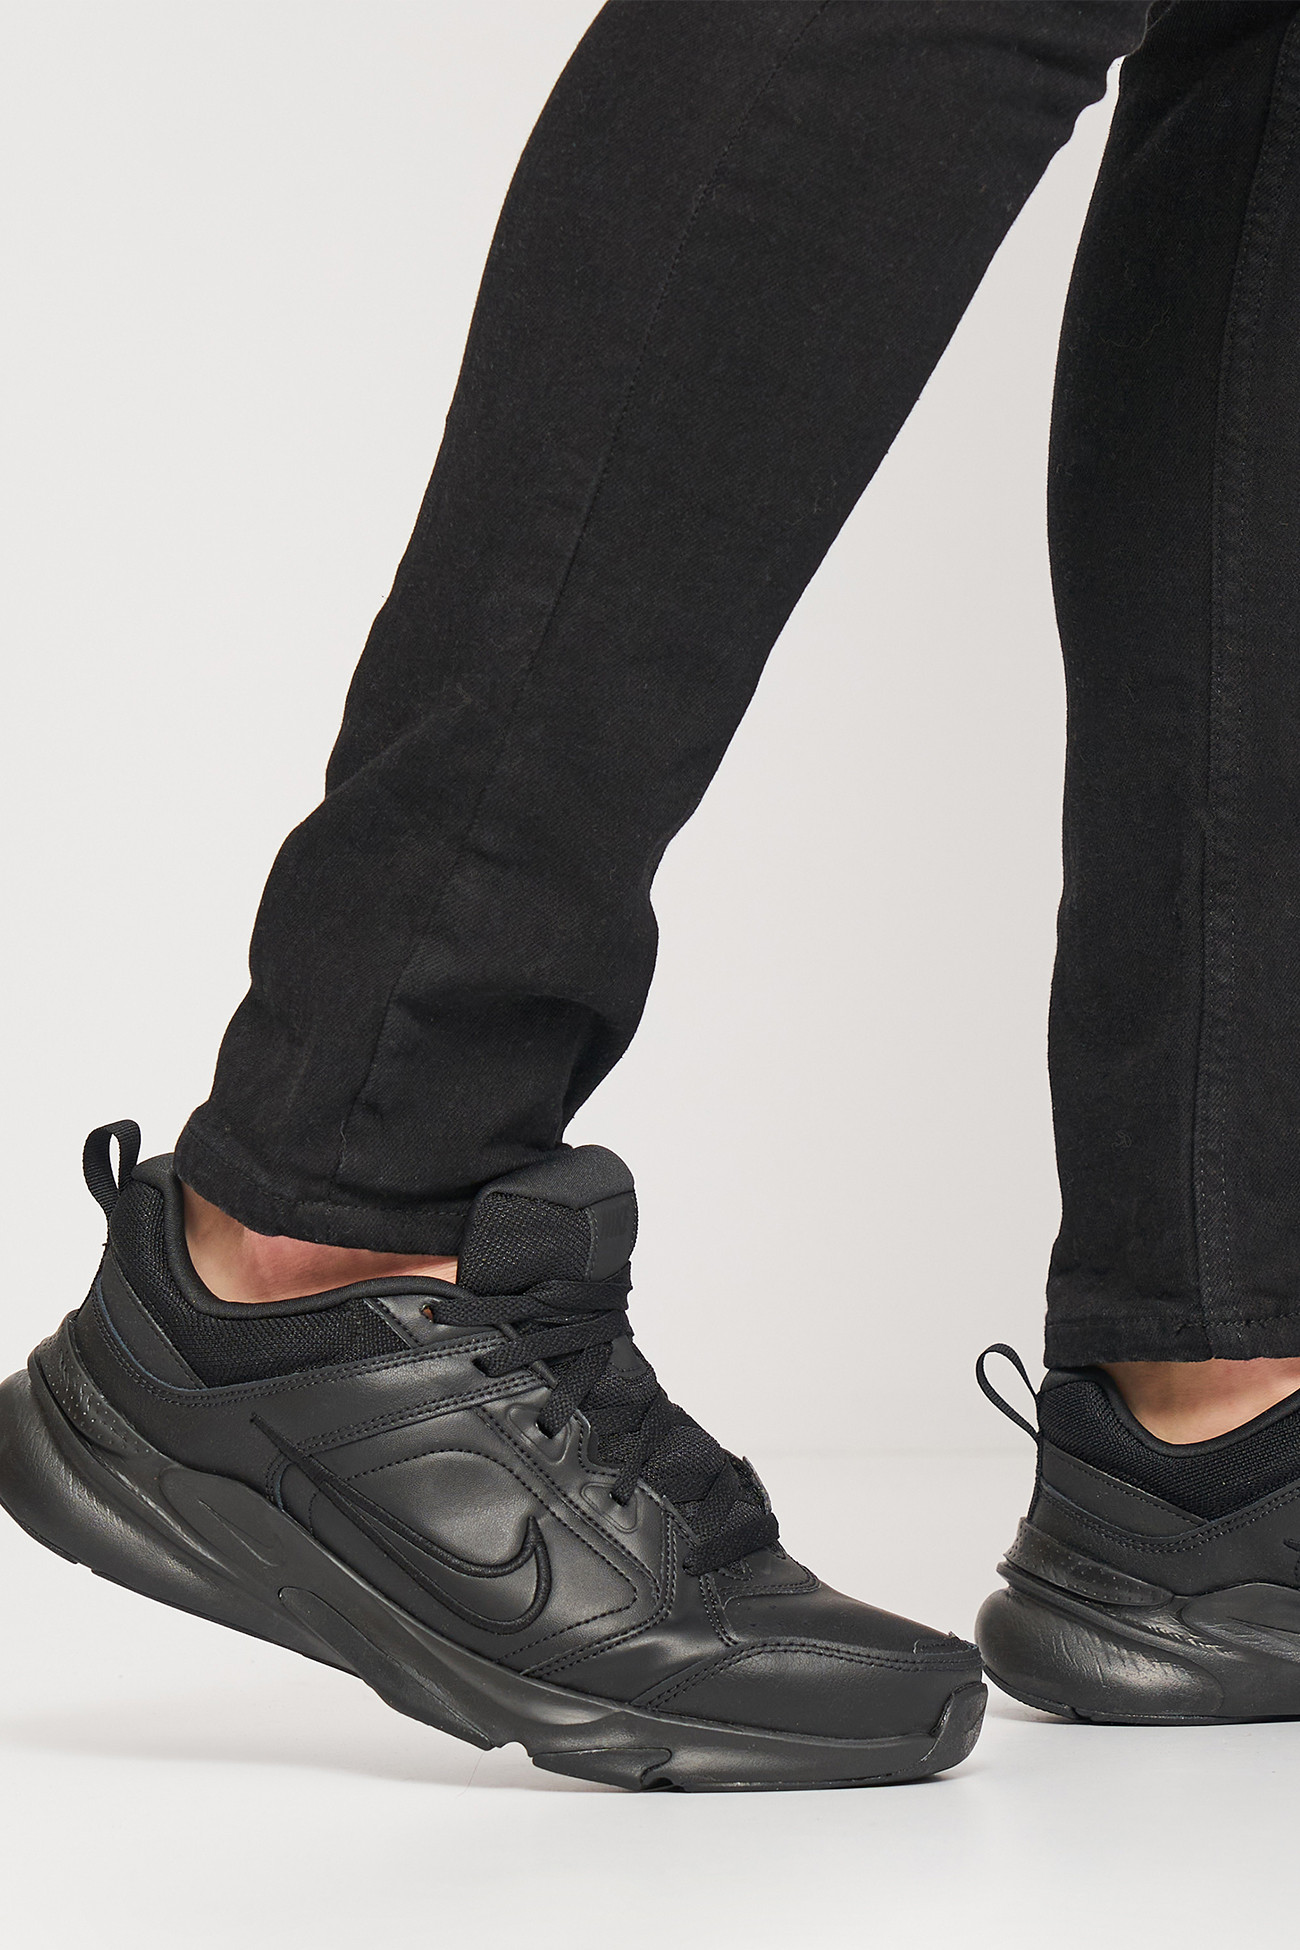 Кроссовки мужские Nike NIKE DEFYALLDAY черные DJ1196-001 изображение 7